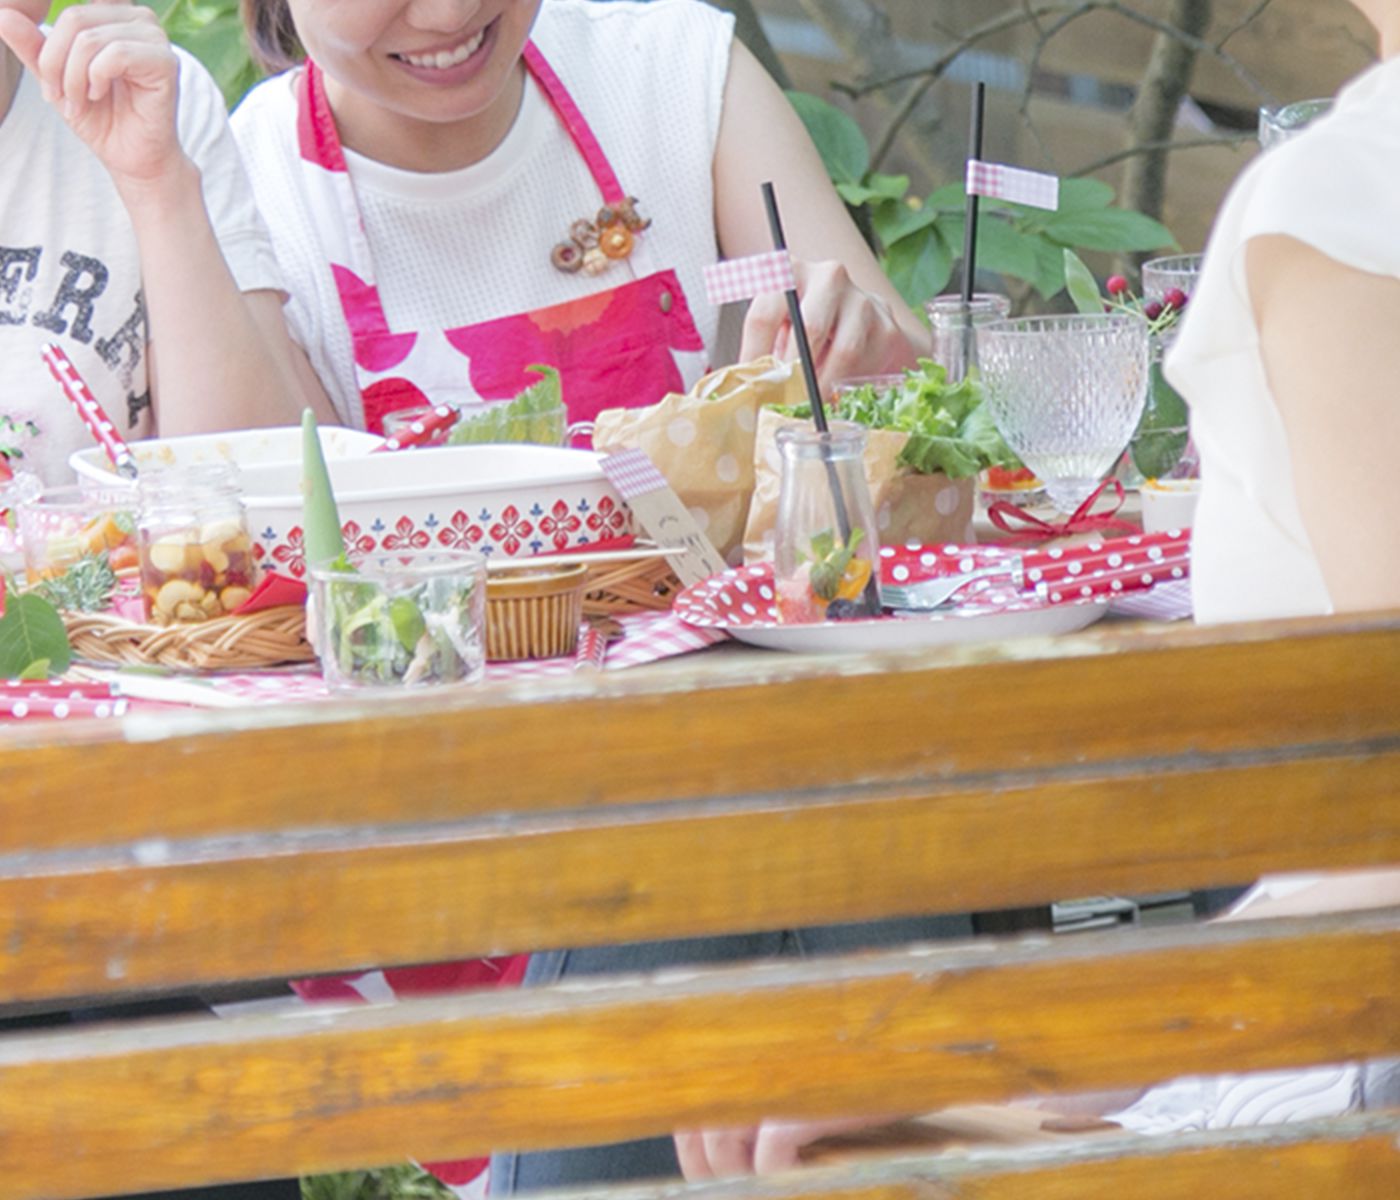 9月11日江戸川区食育パン講座レッスン【やさしい甘さのふんわりミルクハース & 緑黄色野菜のクラッカー】開催します♬